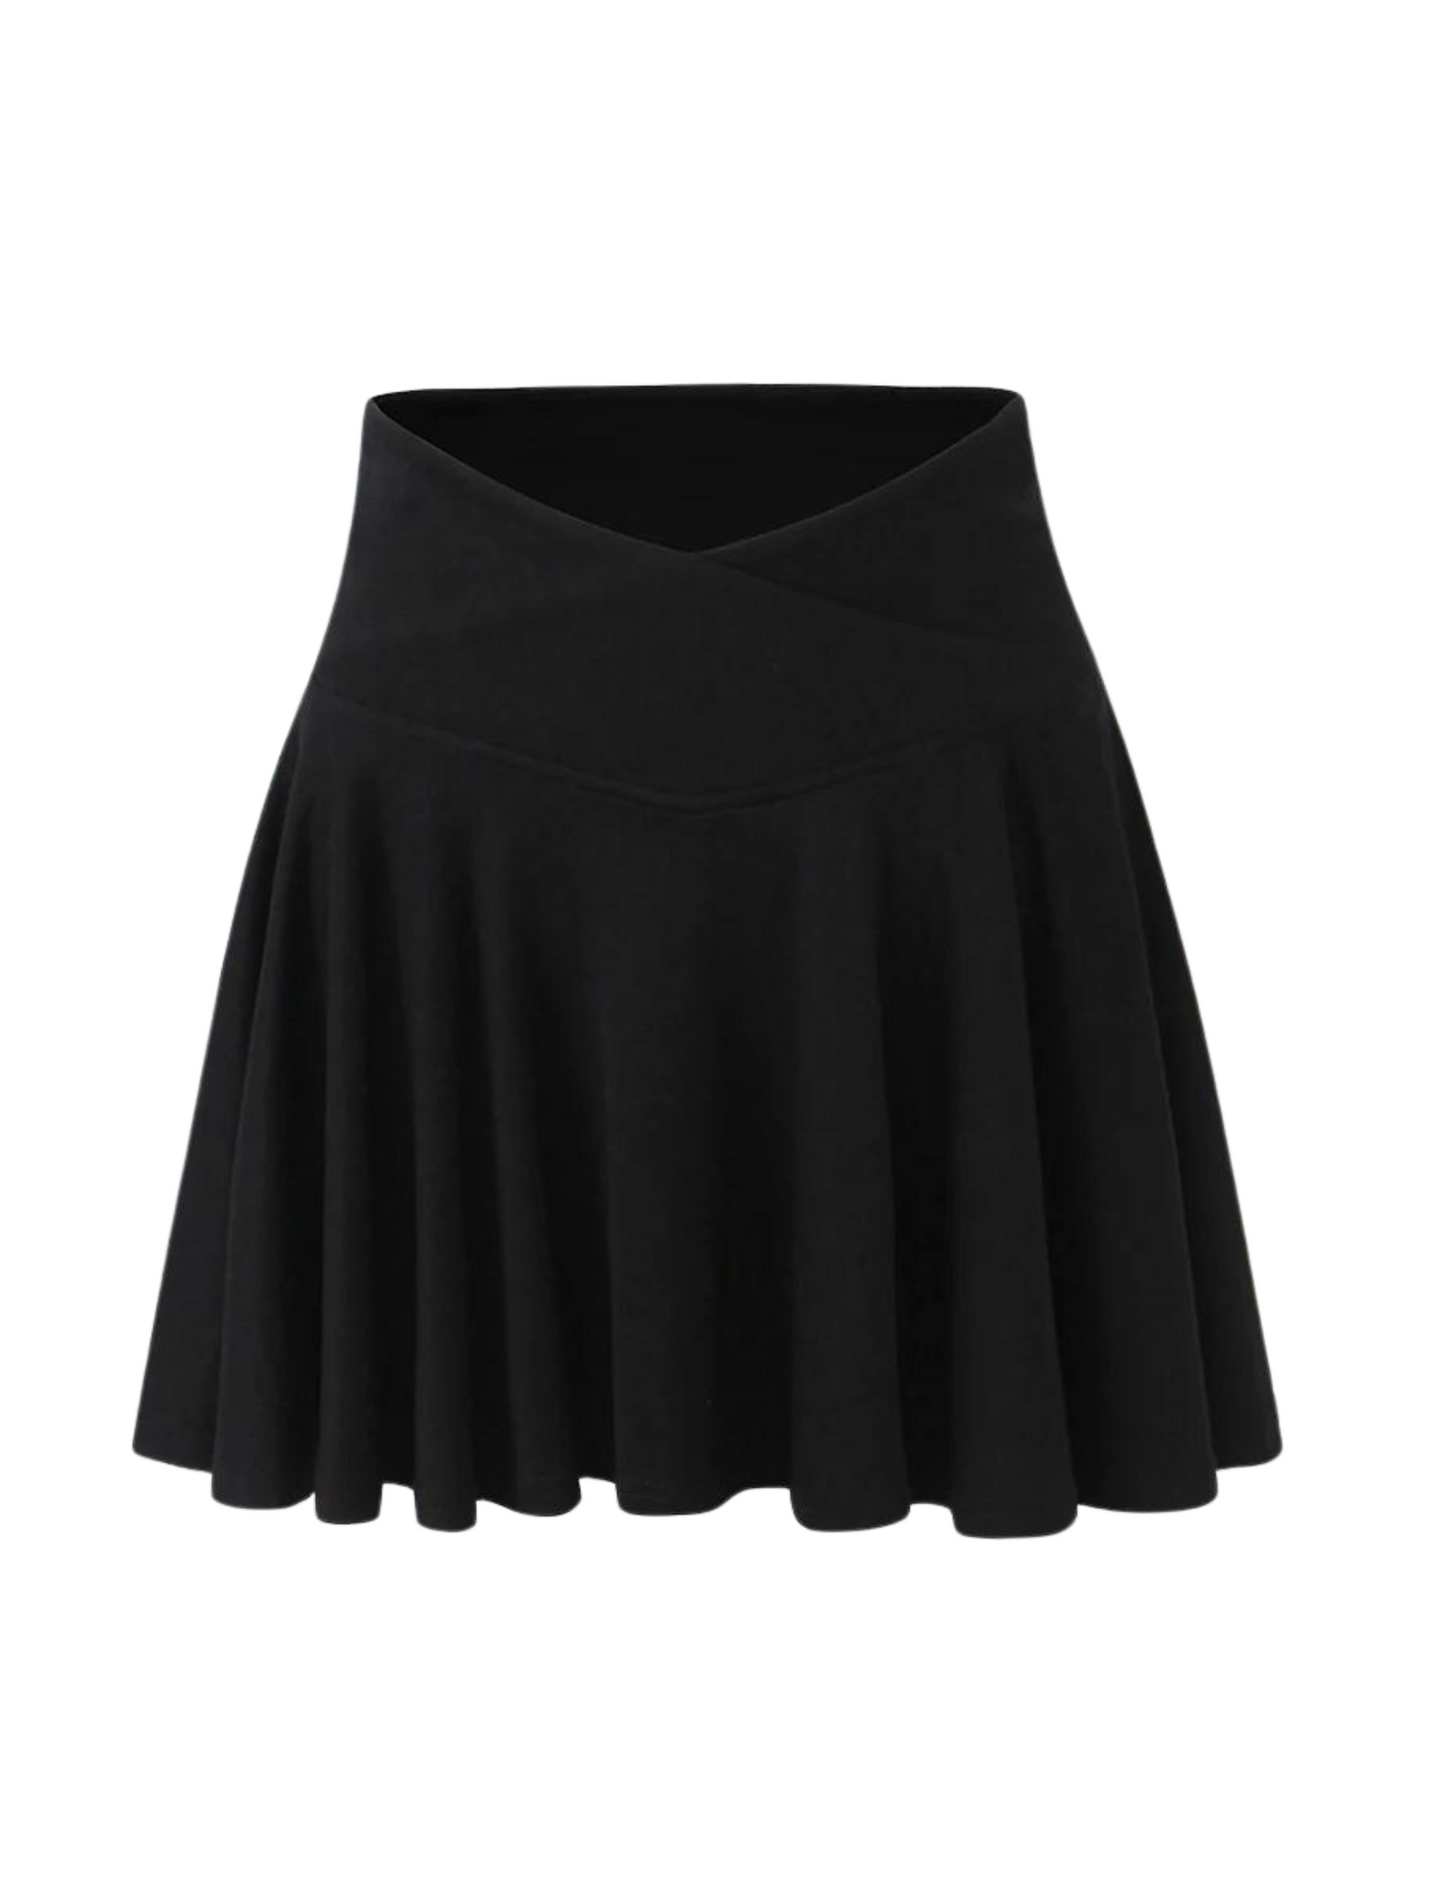 Lovestruck // Black Skirt